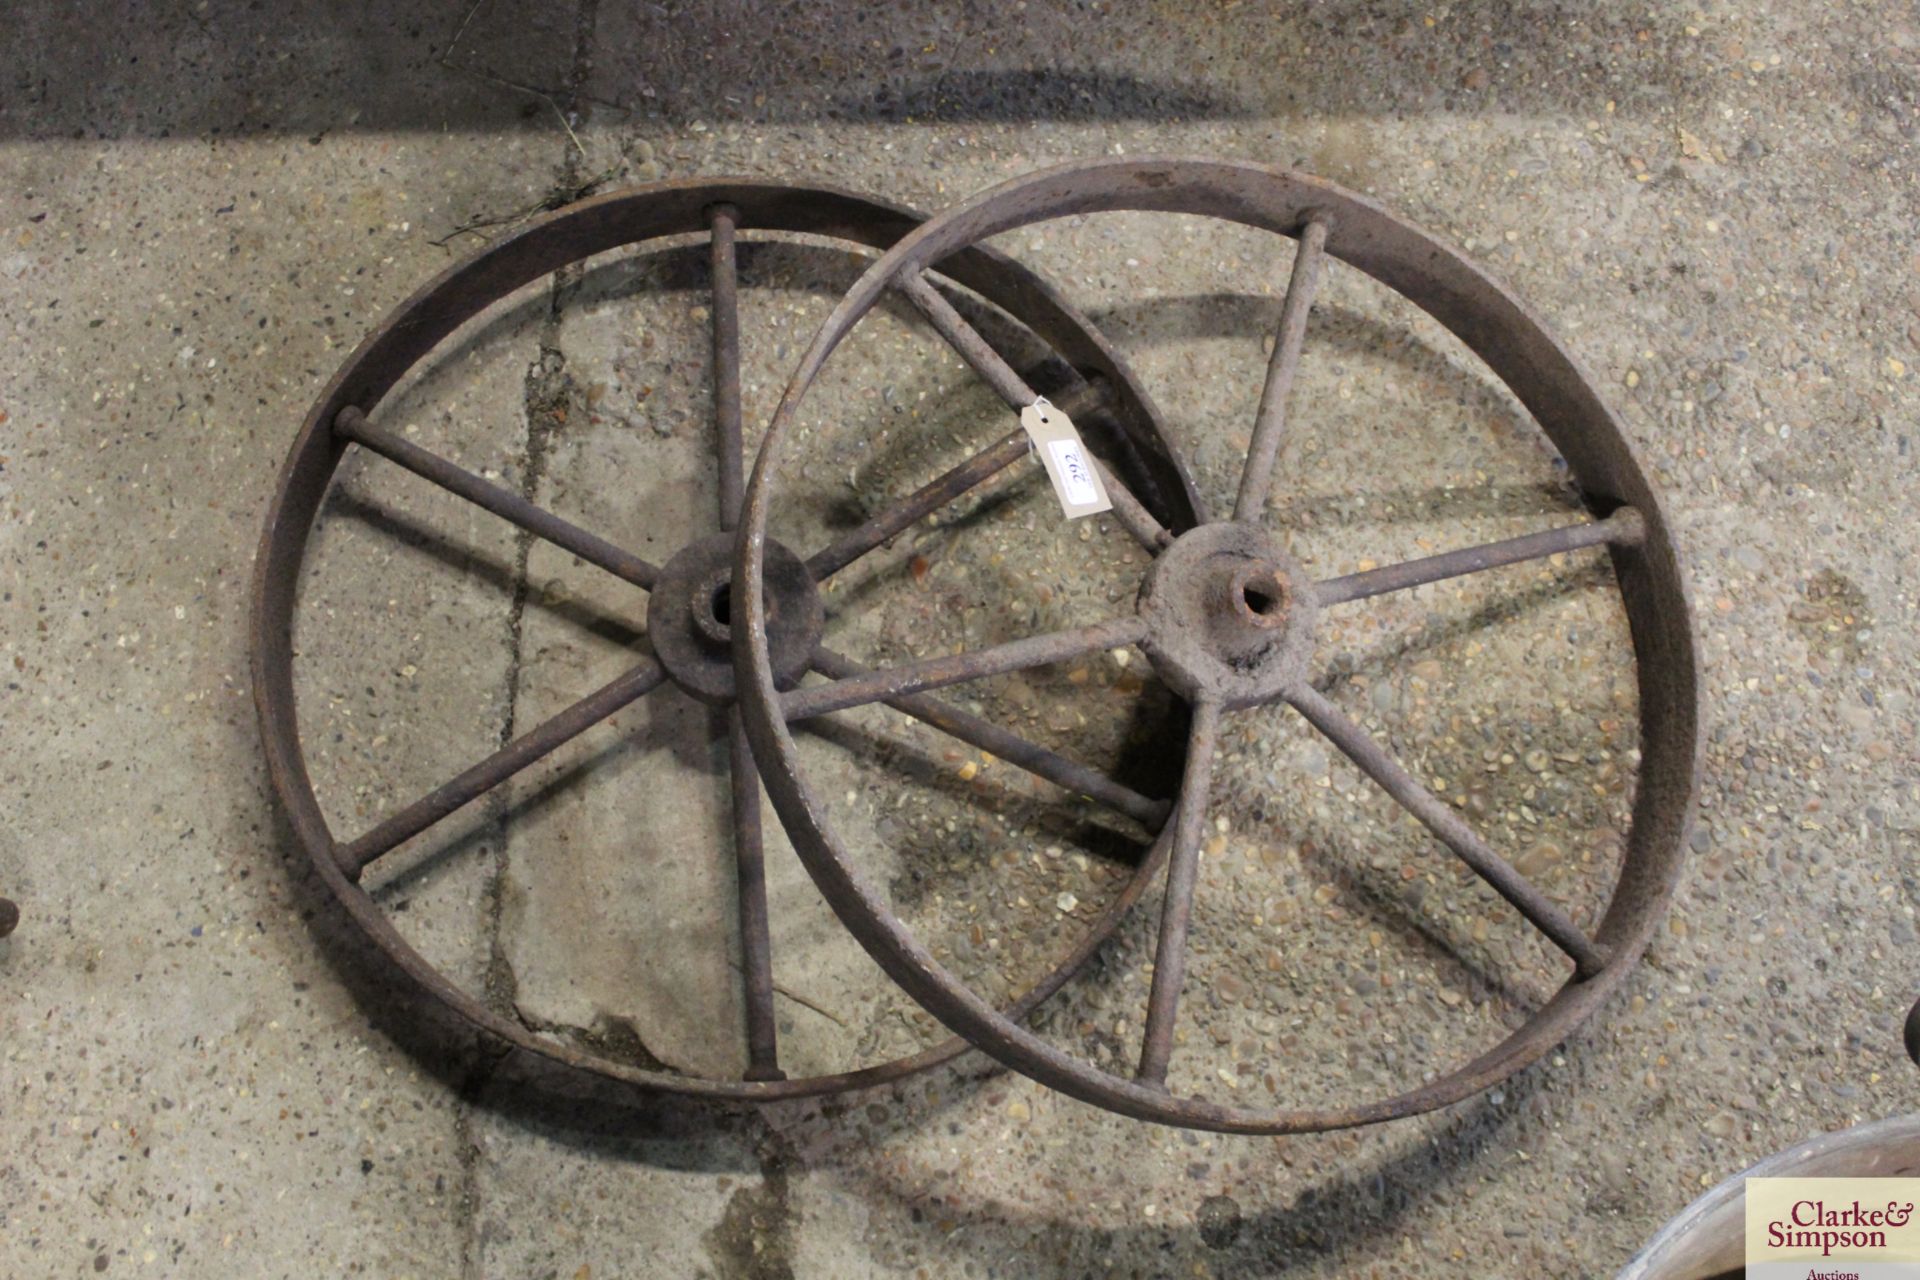 A pair of metal wheels